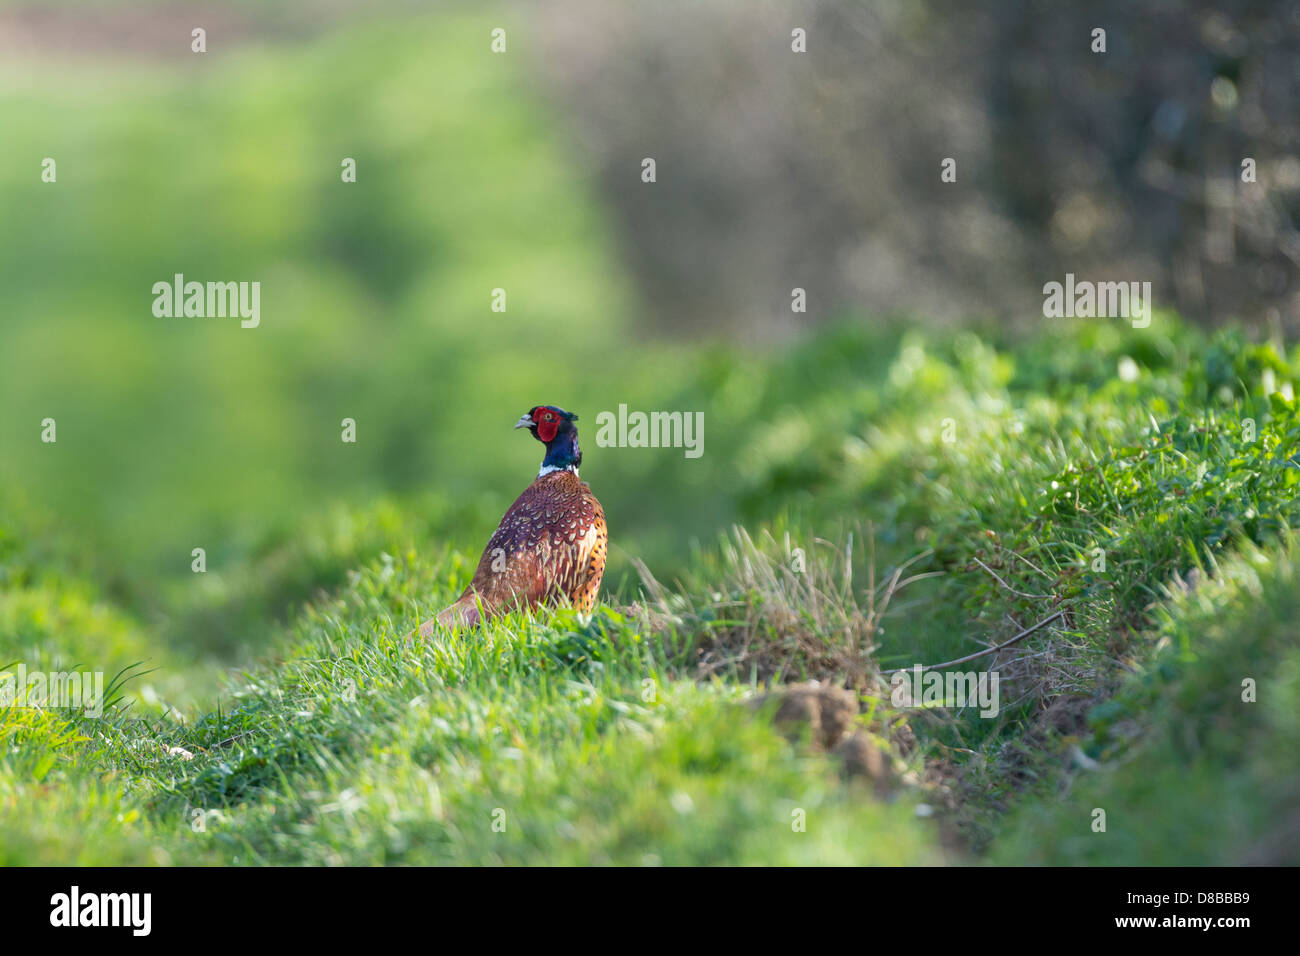 Comune, fagiano Phasianus colchicus, uccello maschio sulla capezzagna, Foto Stock